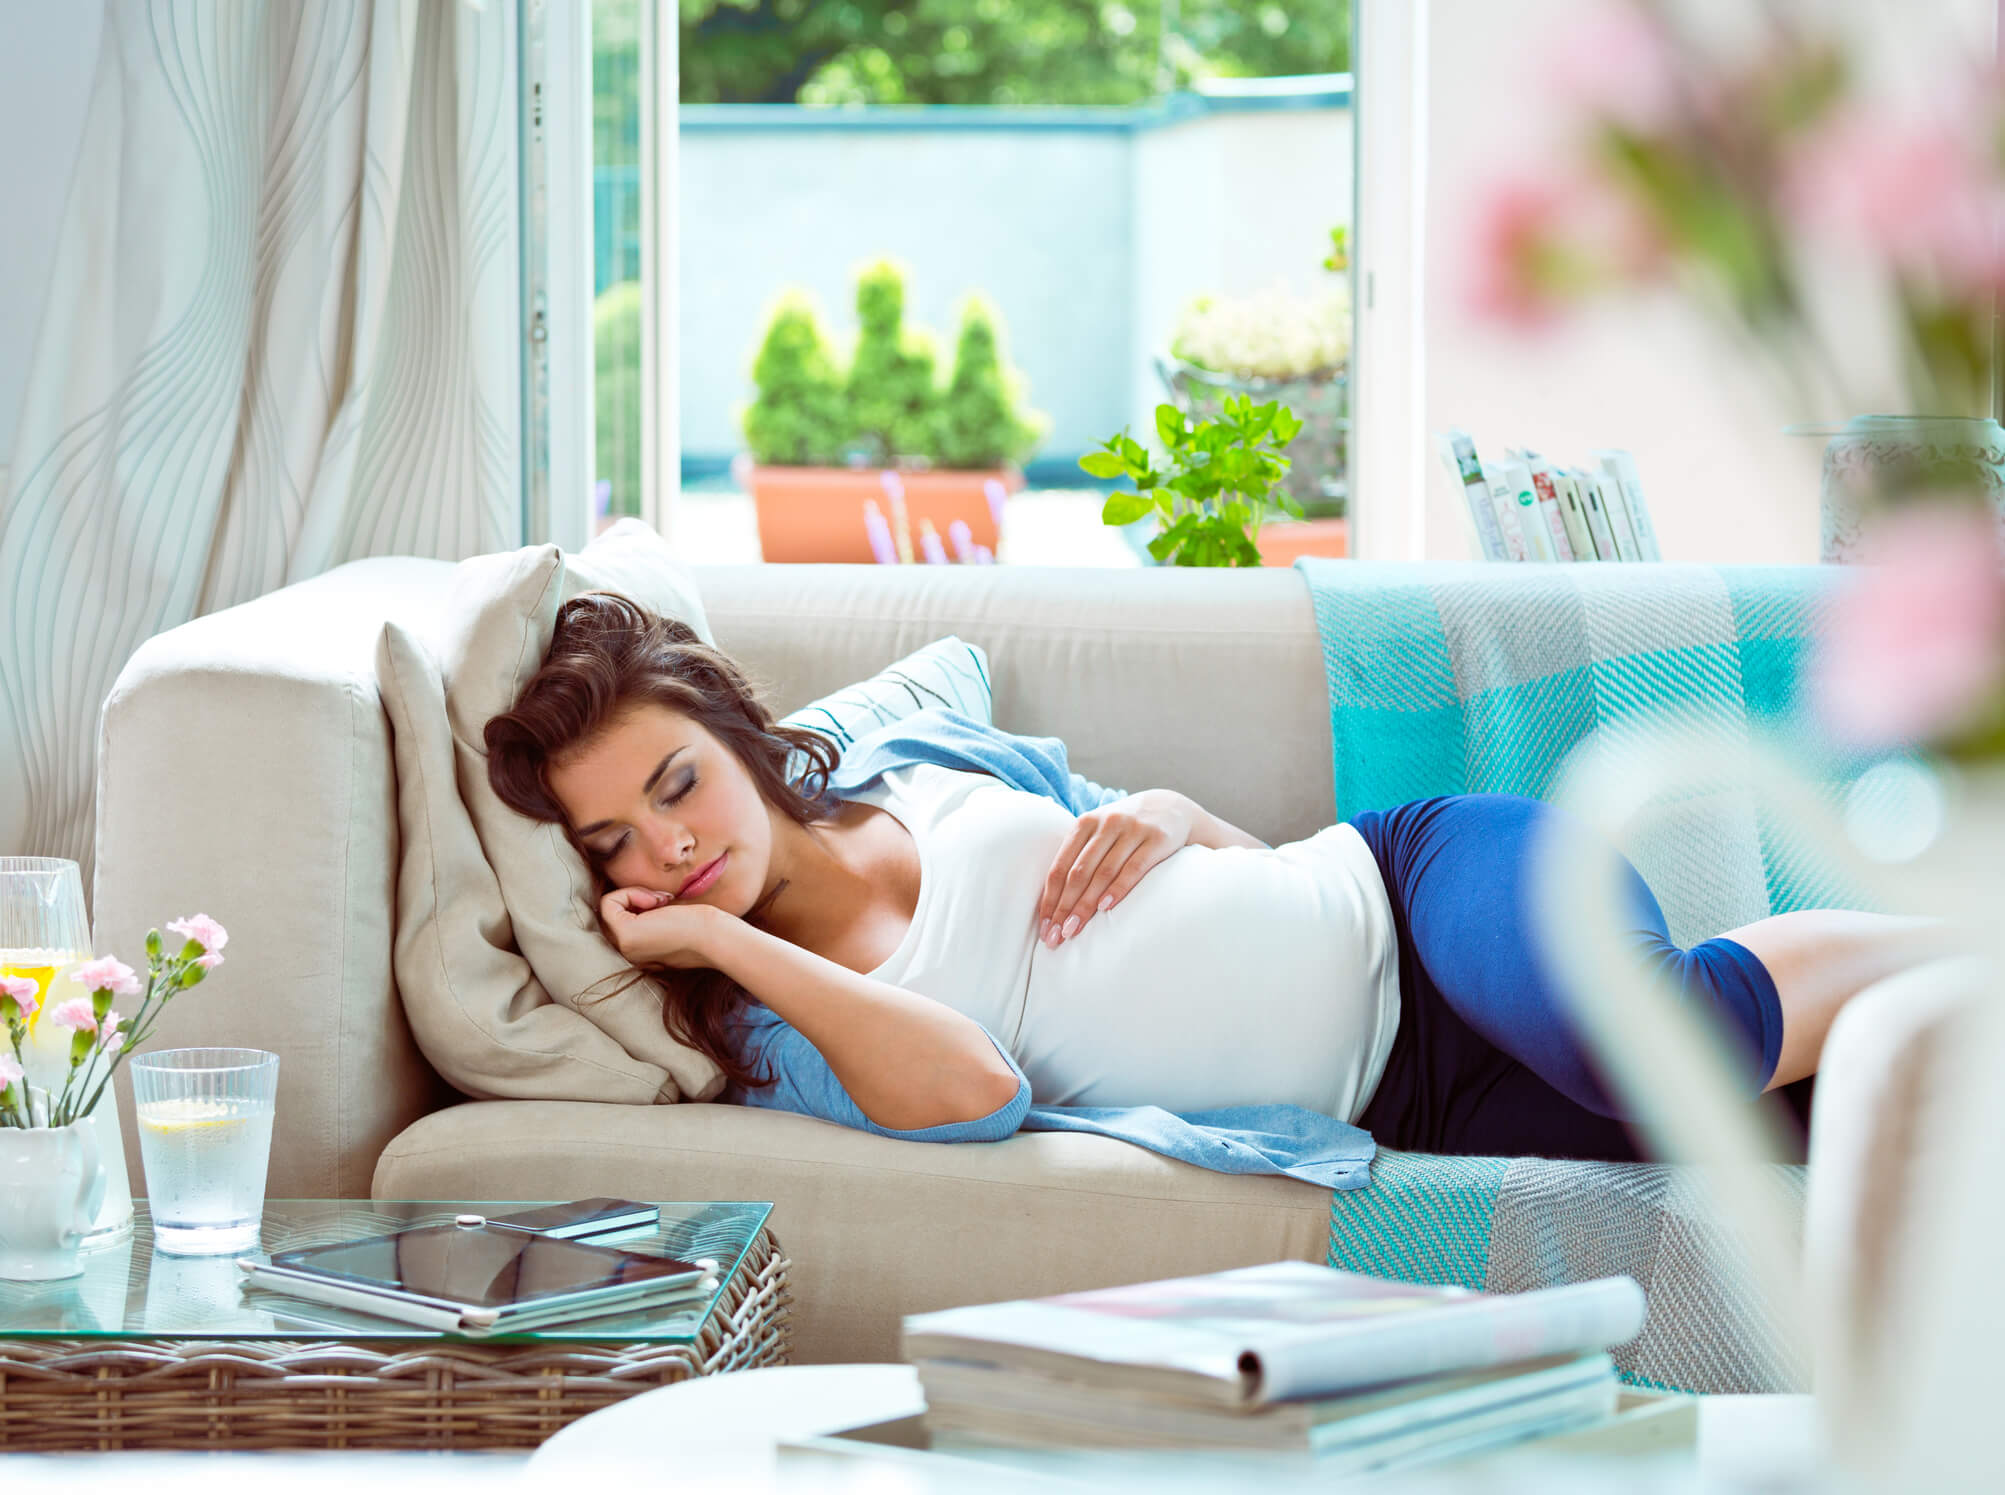 Durante el primer trimestre del embarazo es normal que sientas algunas molestias